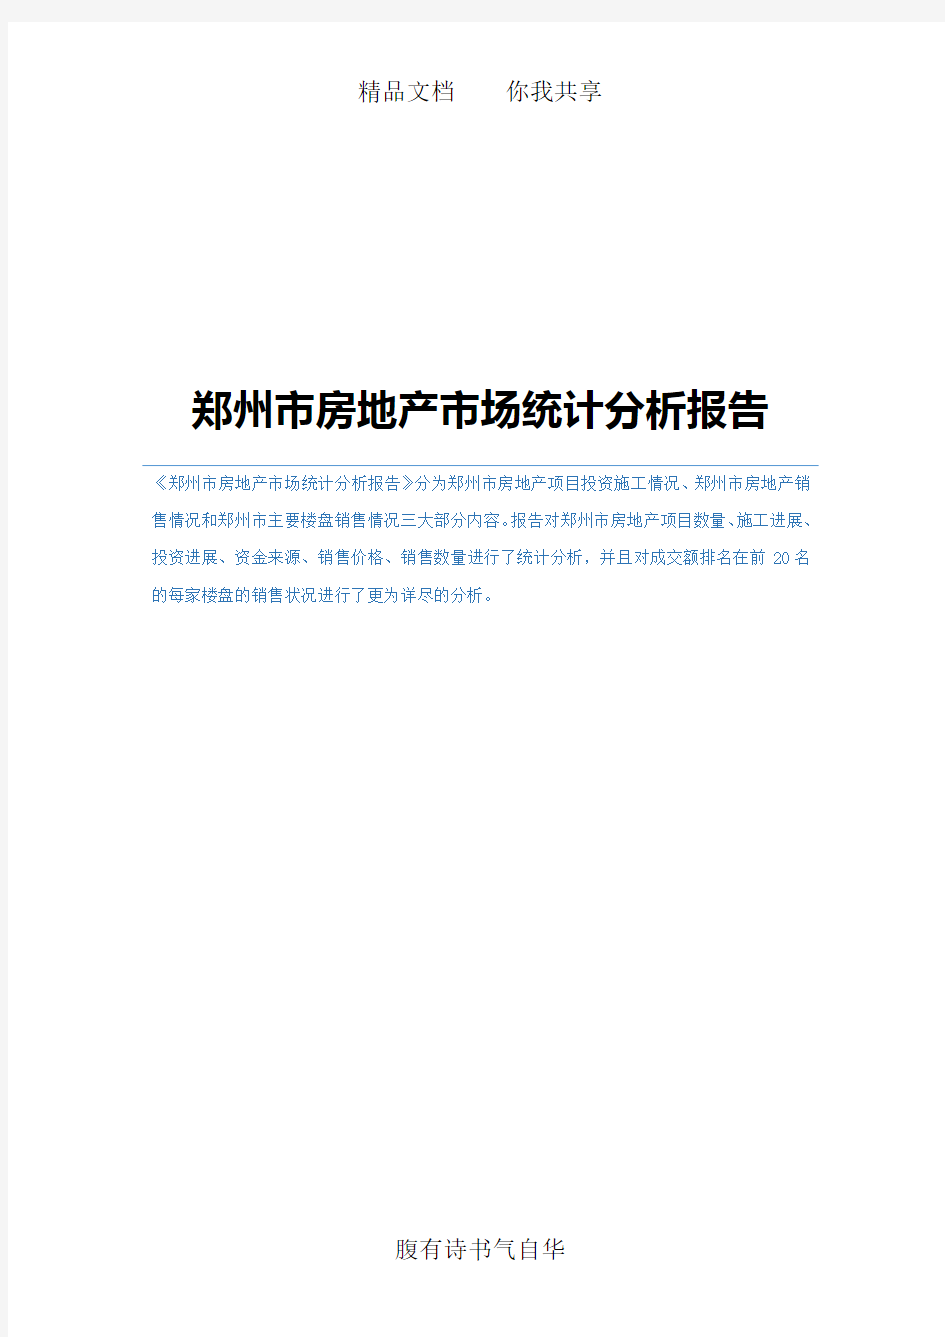 郑州市房地产市场统计分析报告